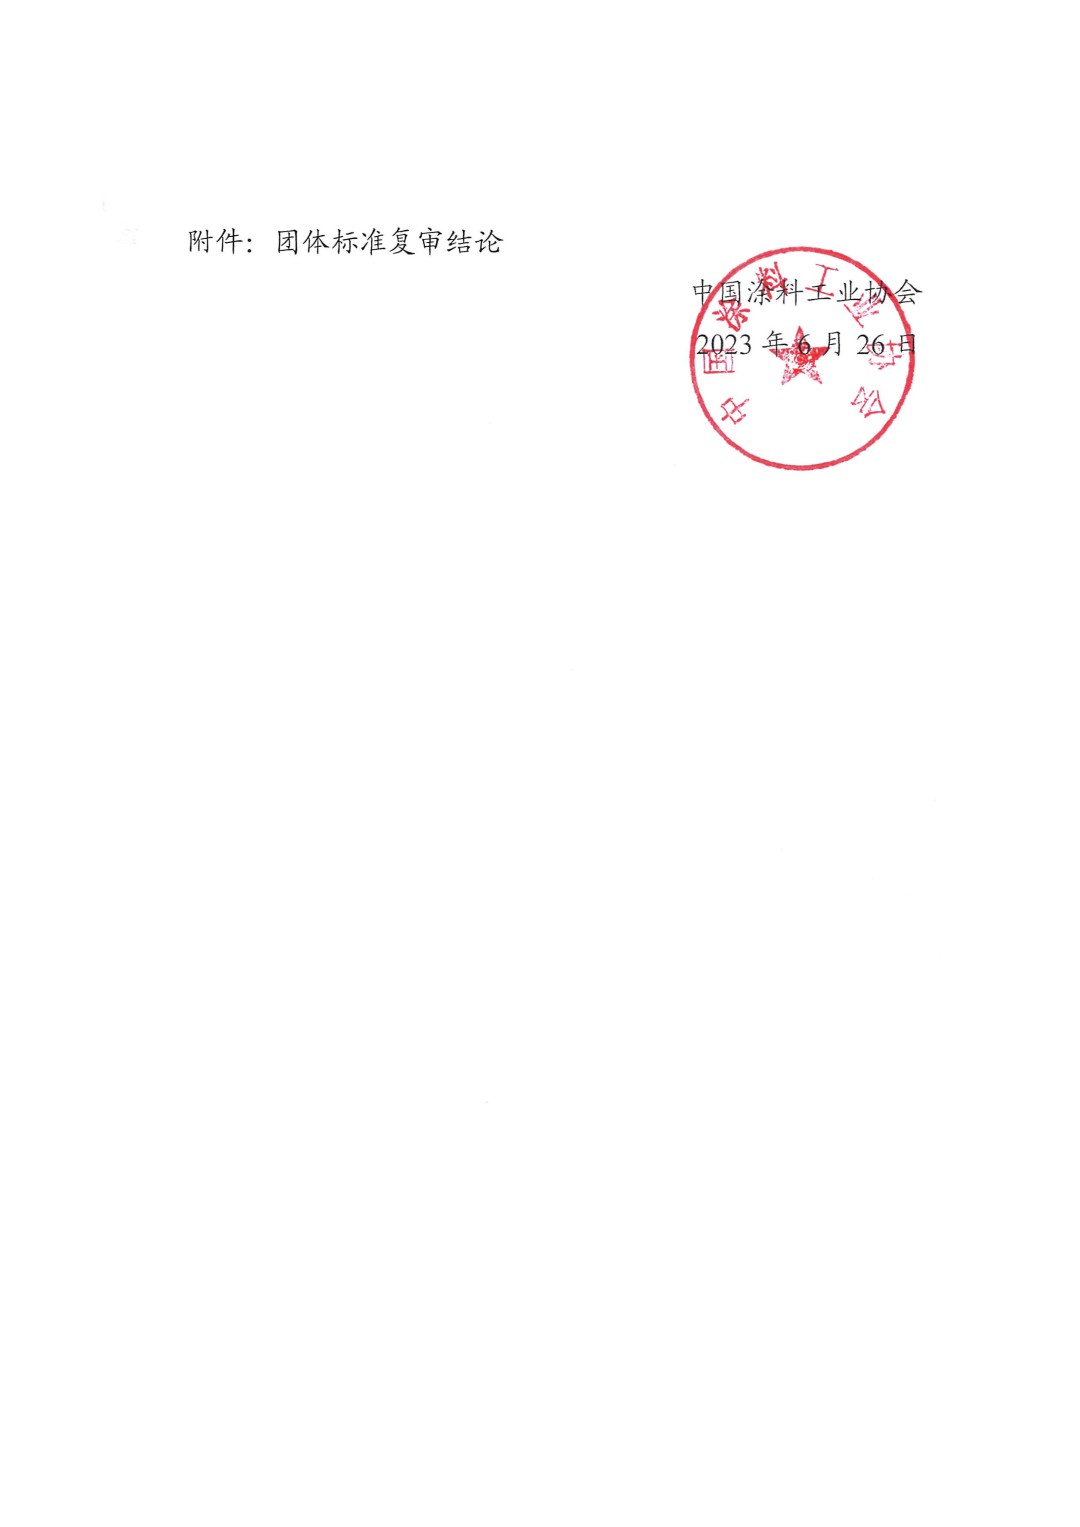 中国涂料工业协会关于公布团体标准复审结论的通知-2